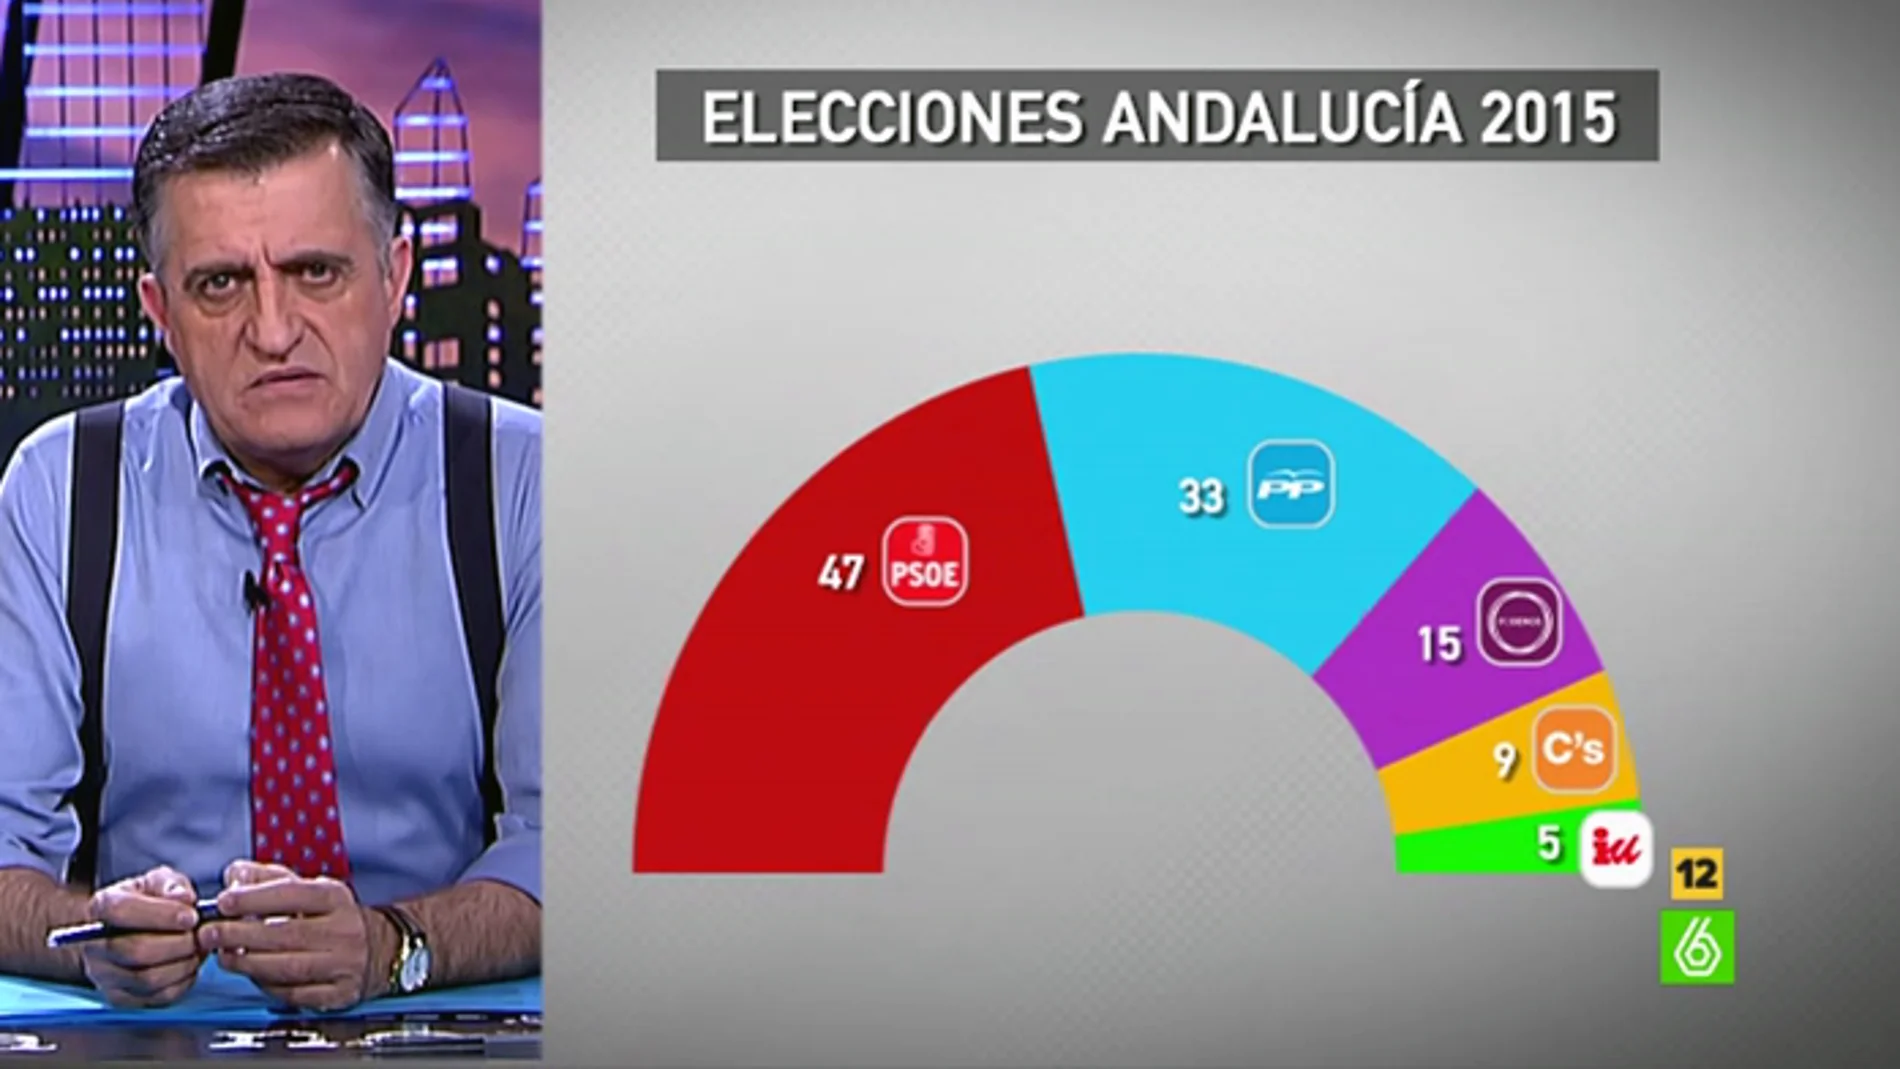 Wyoming analiza los resultados de las elecciones en Andalucía